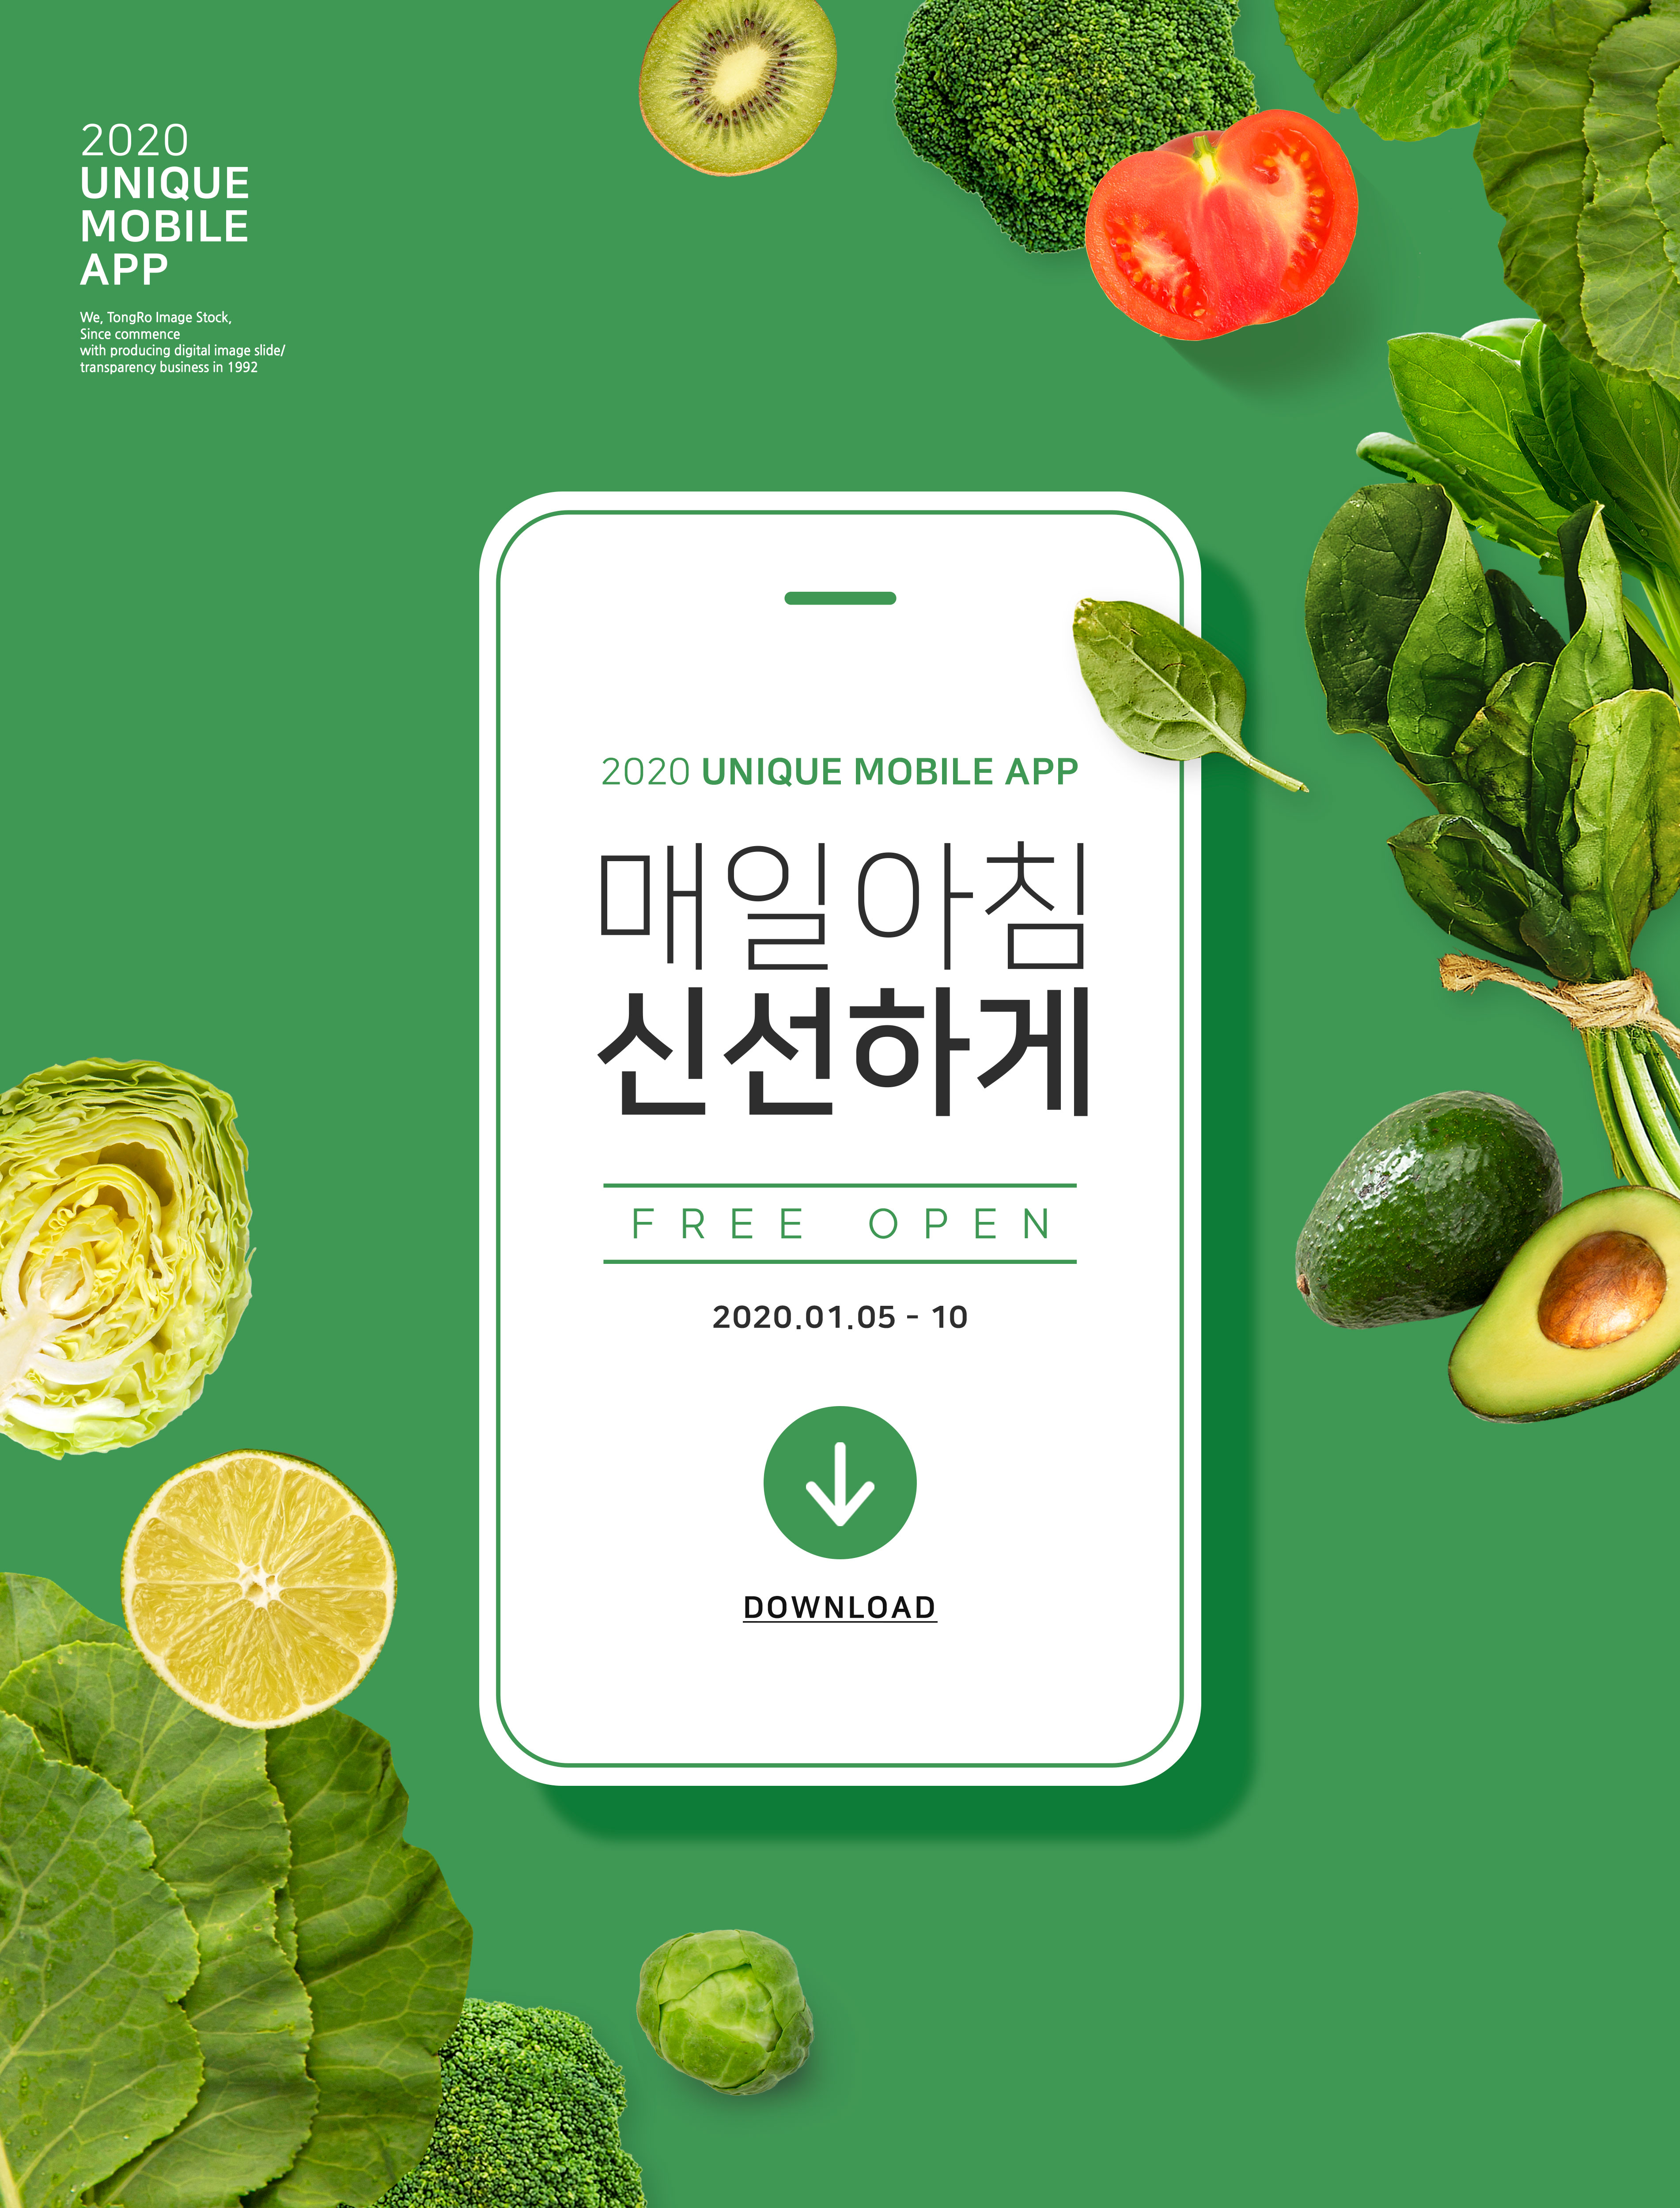 绿色新鲜有机蔬菜在线订购配送主题海报PSD素材蚂蚁素材精选韩国素材插图